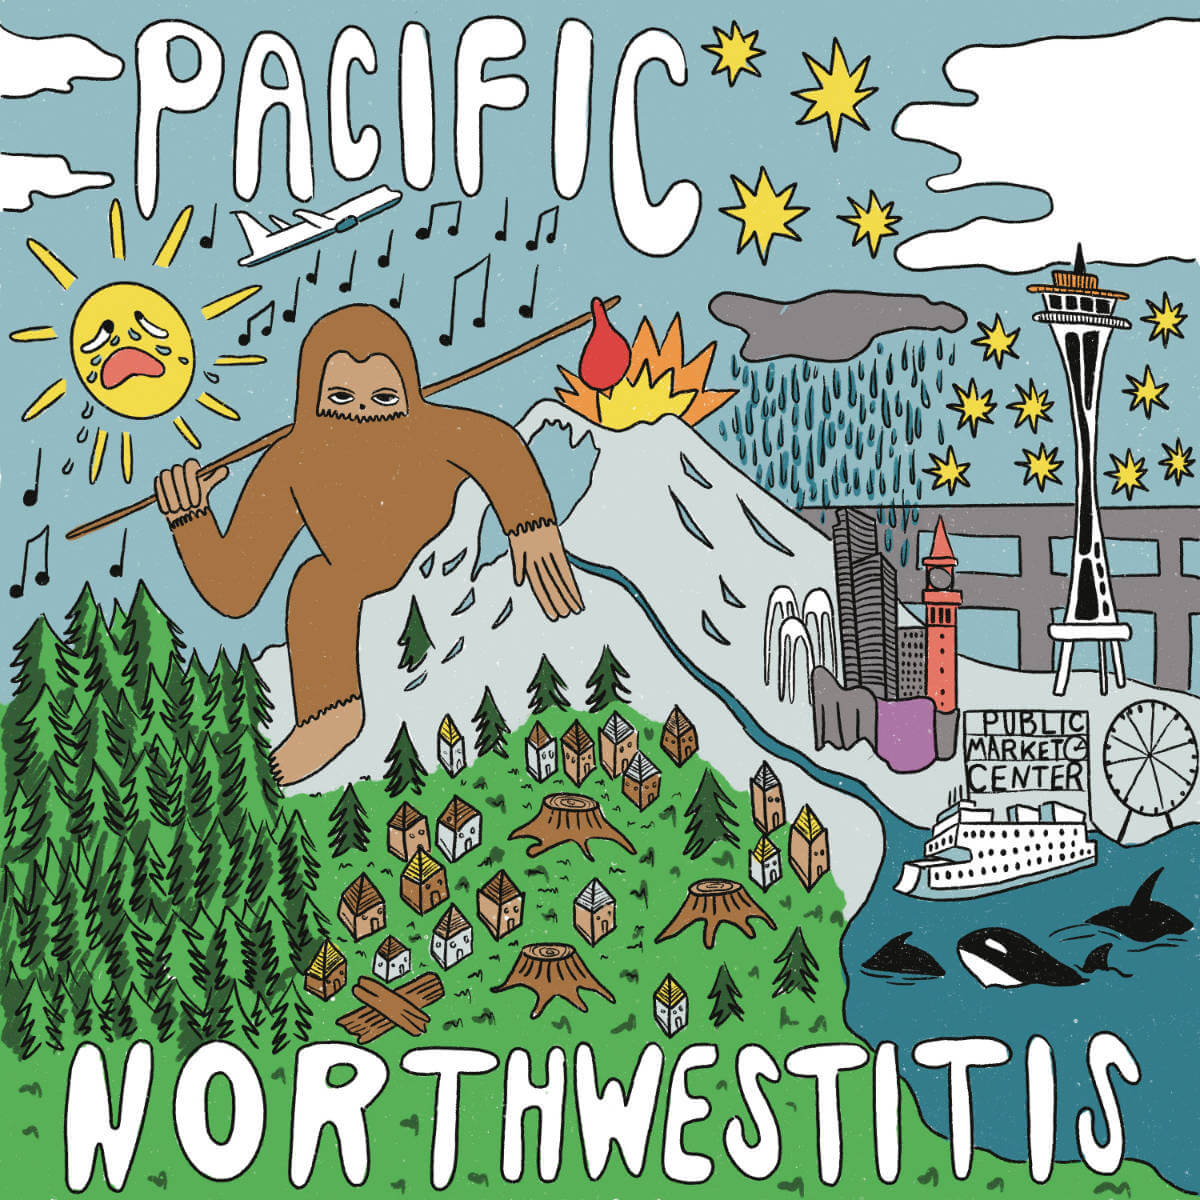 Pacific Northwestitis album cover.